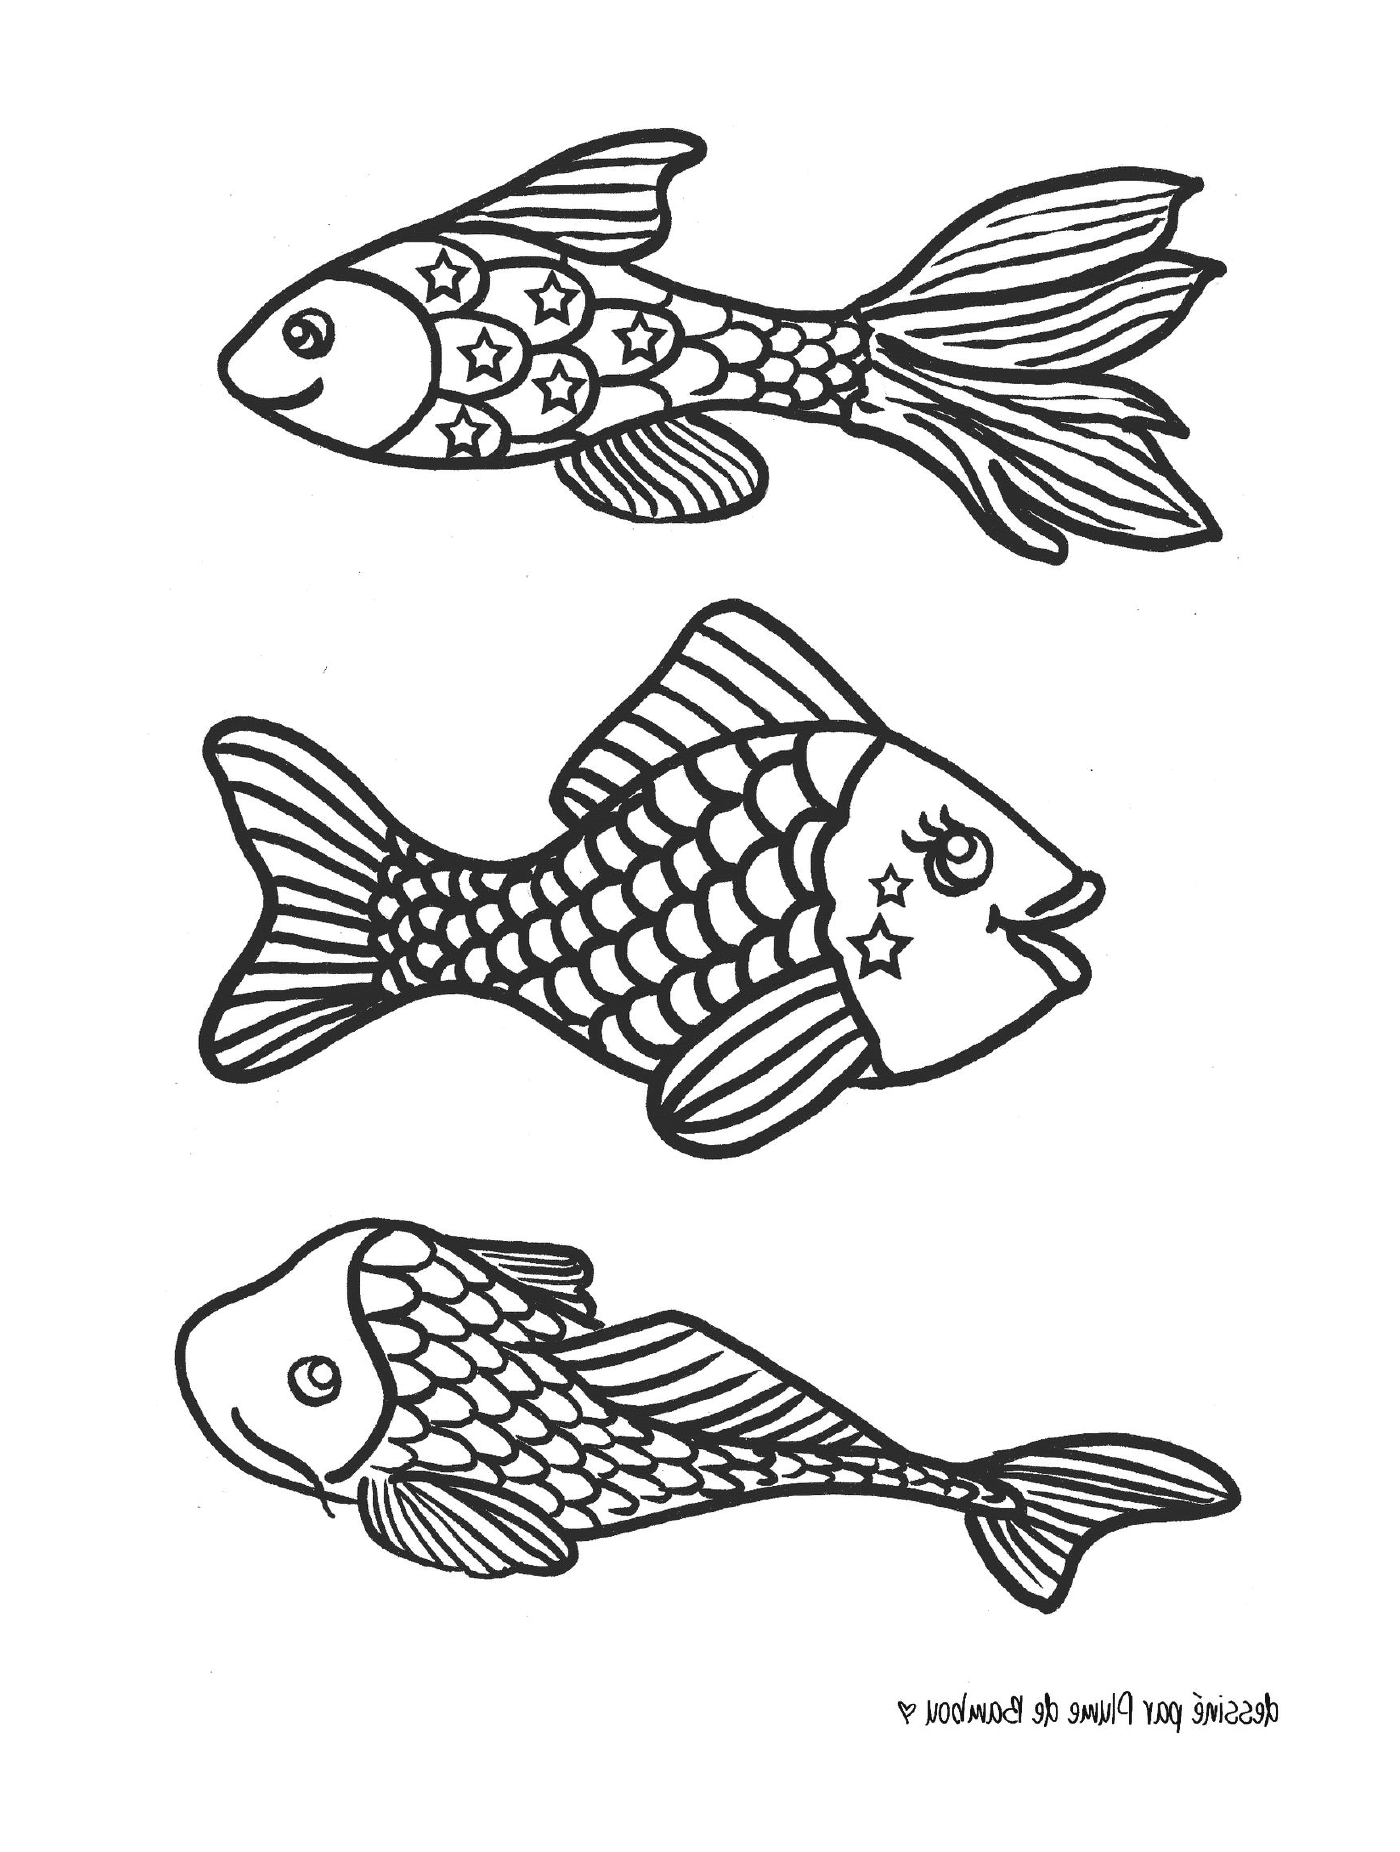   Trois poissons noirs et blancs 